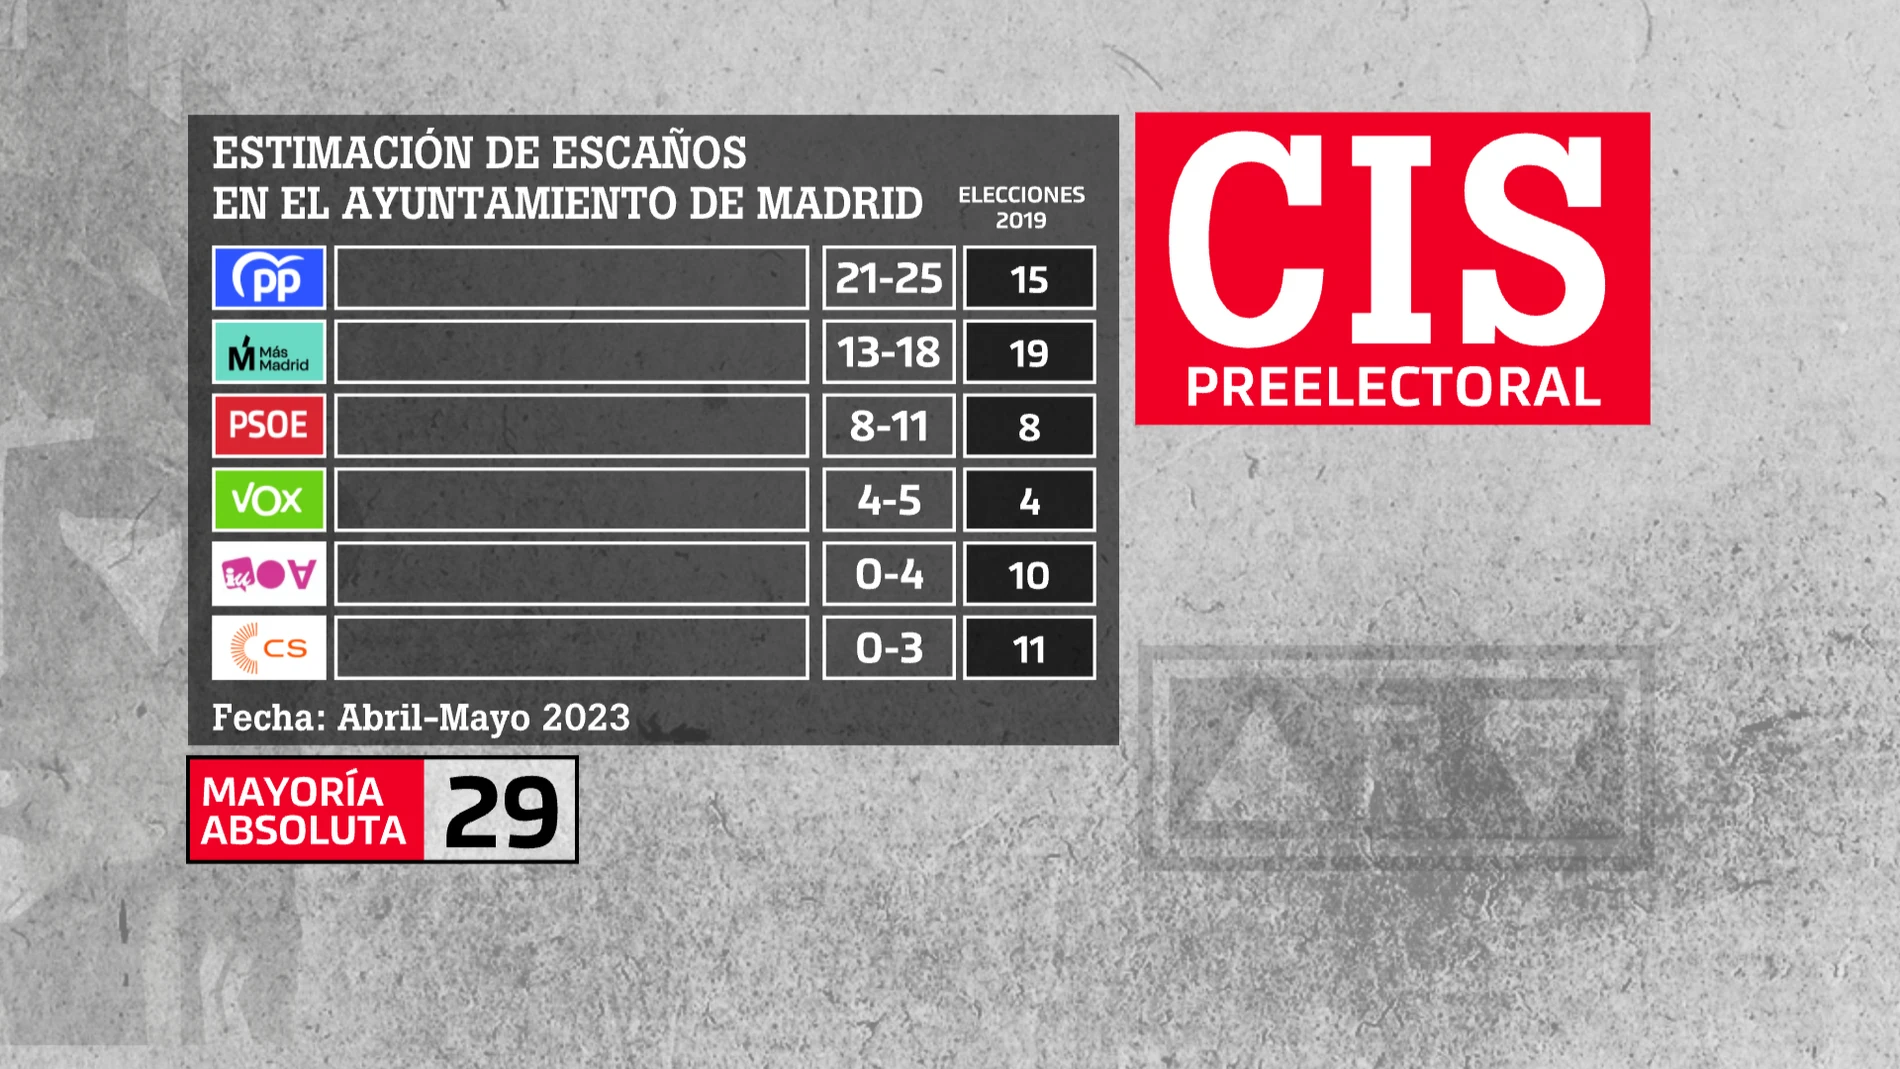 CIS abril - mayo 2023 | Estimación de escaños en el Ayuntamiento de Madrid